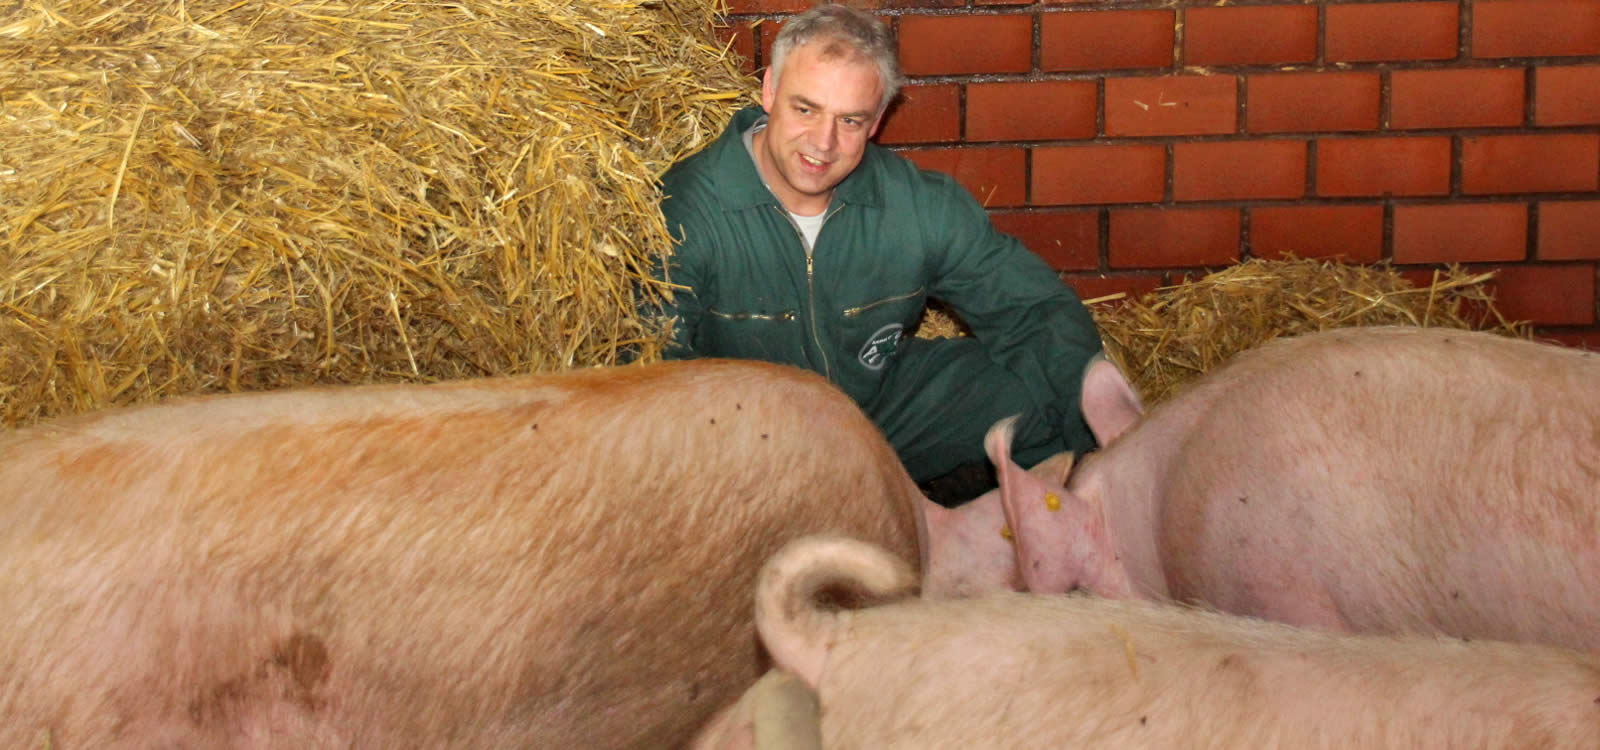 AWS - Animal Welfare Service GmbH - Tierschutz ist die Zukunft!